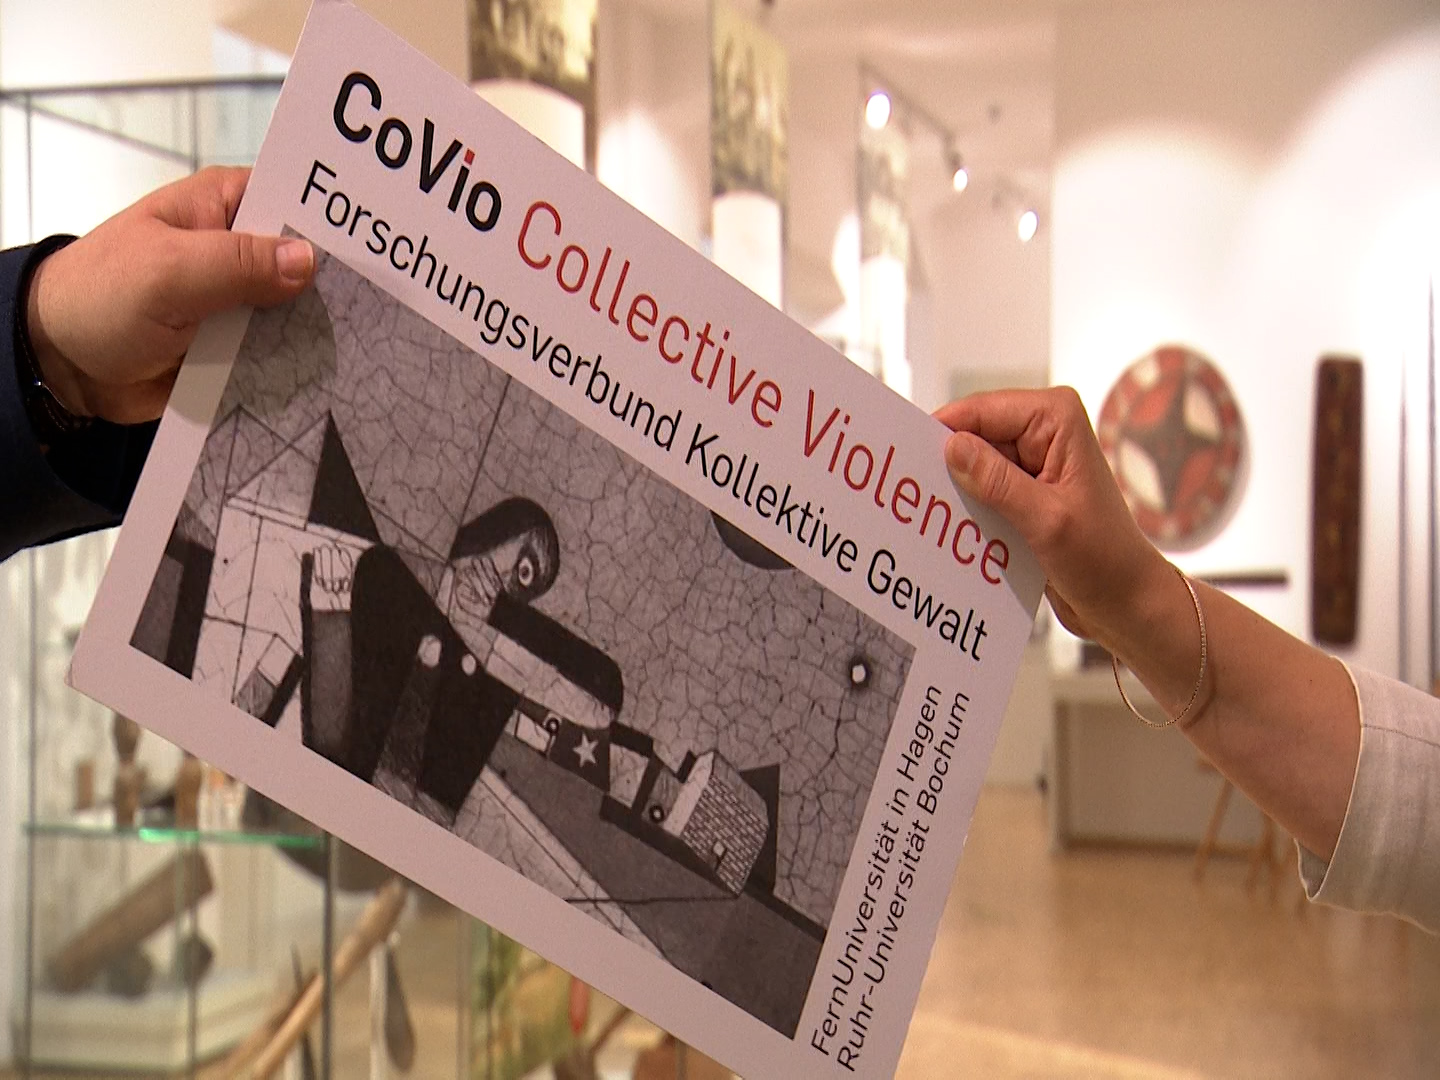 Zwei Hände reichen sich in einem Ausstellungsraum eine Pappe mit dem Logo des Forschungsverbundes CoVio Collective Violence